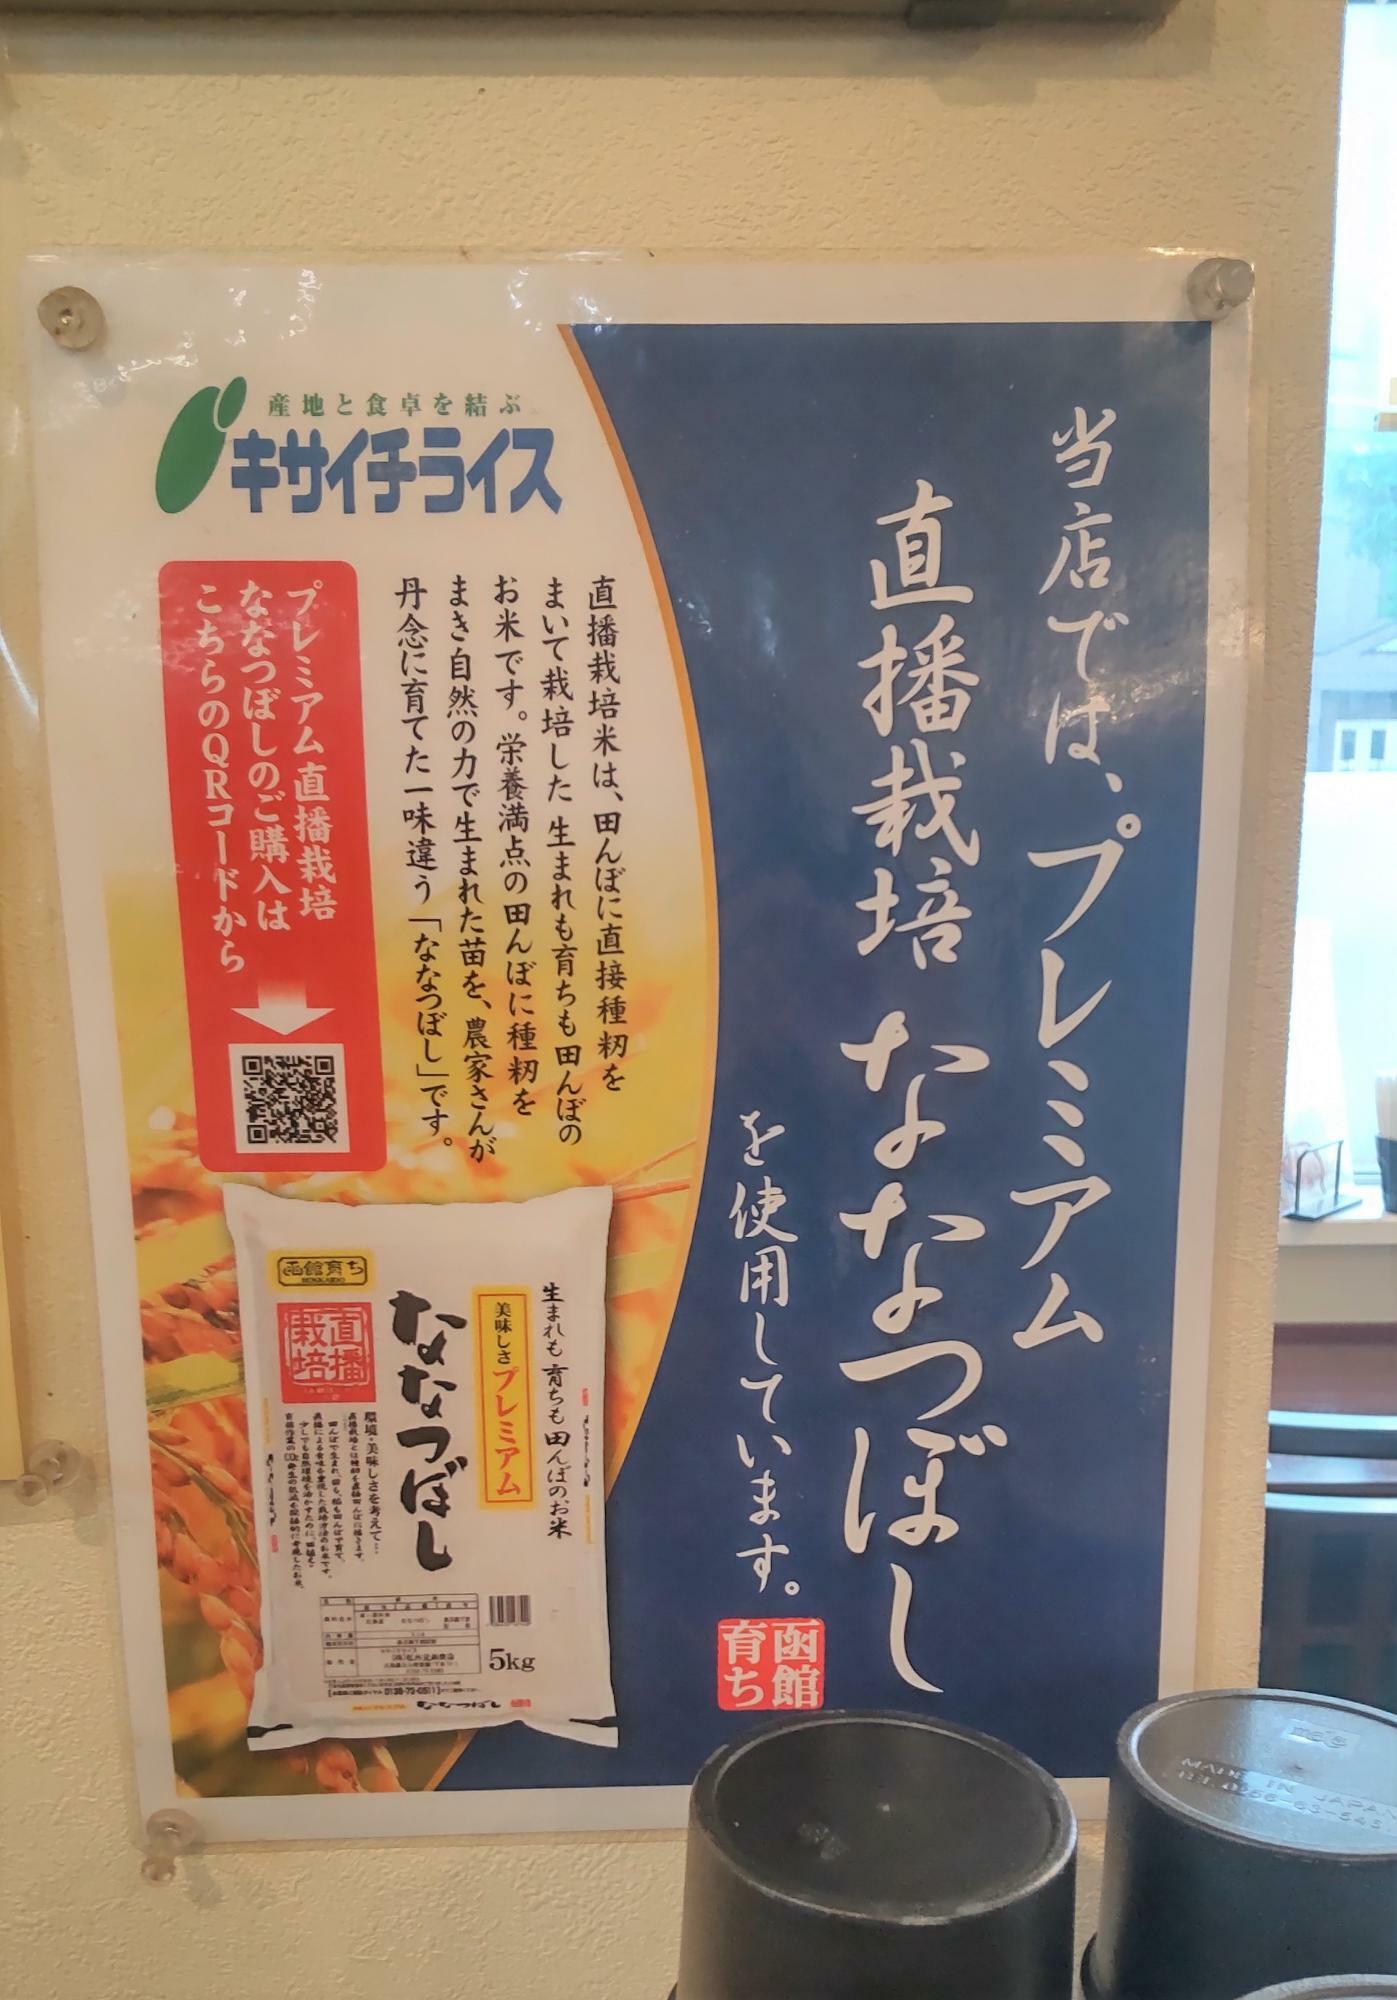 北海道米のななつぼしを使用しているという表示もされていて、真摯なお店ですね。